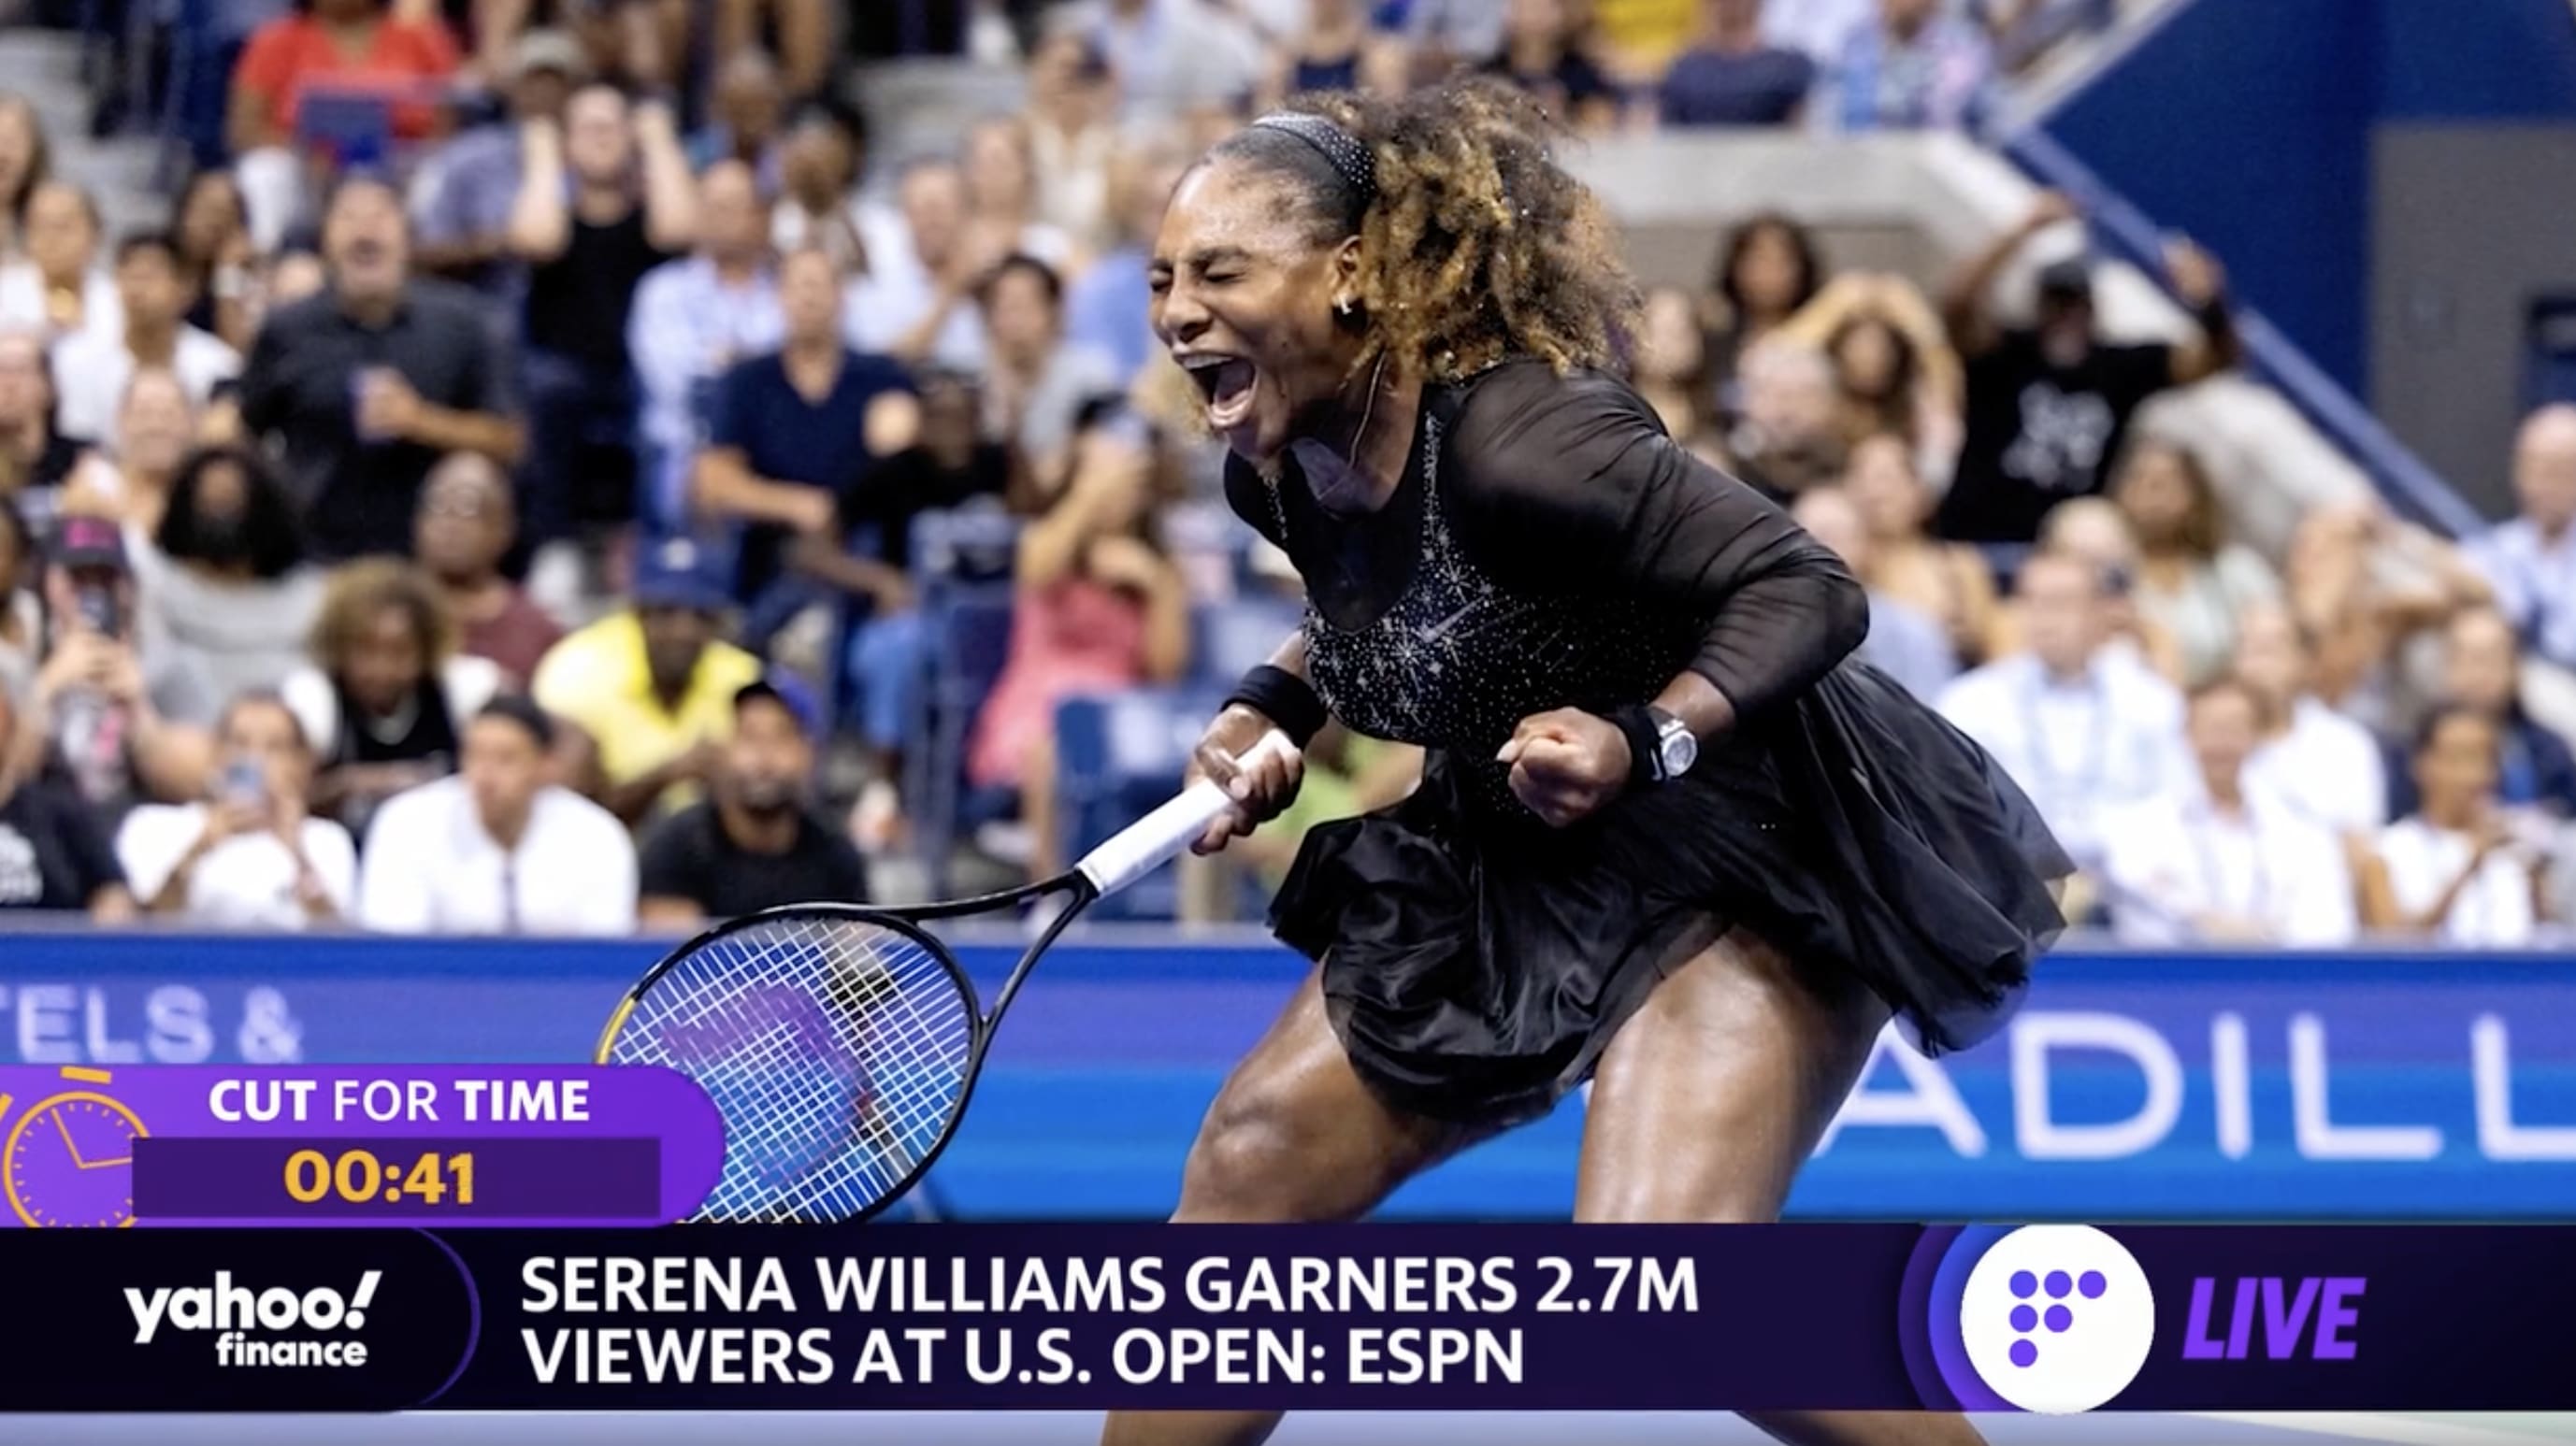 Serena Williams at U.S